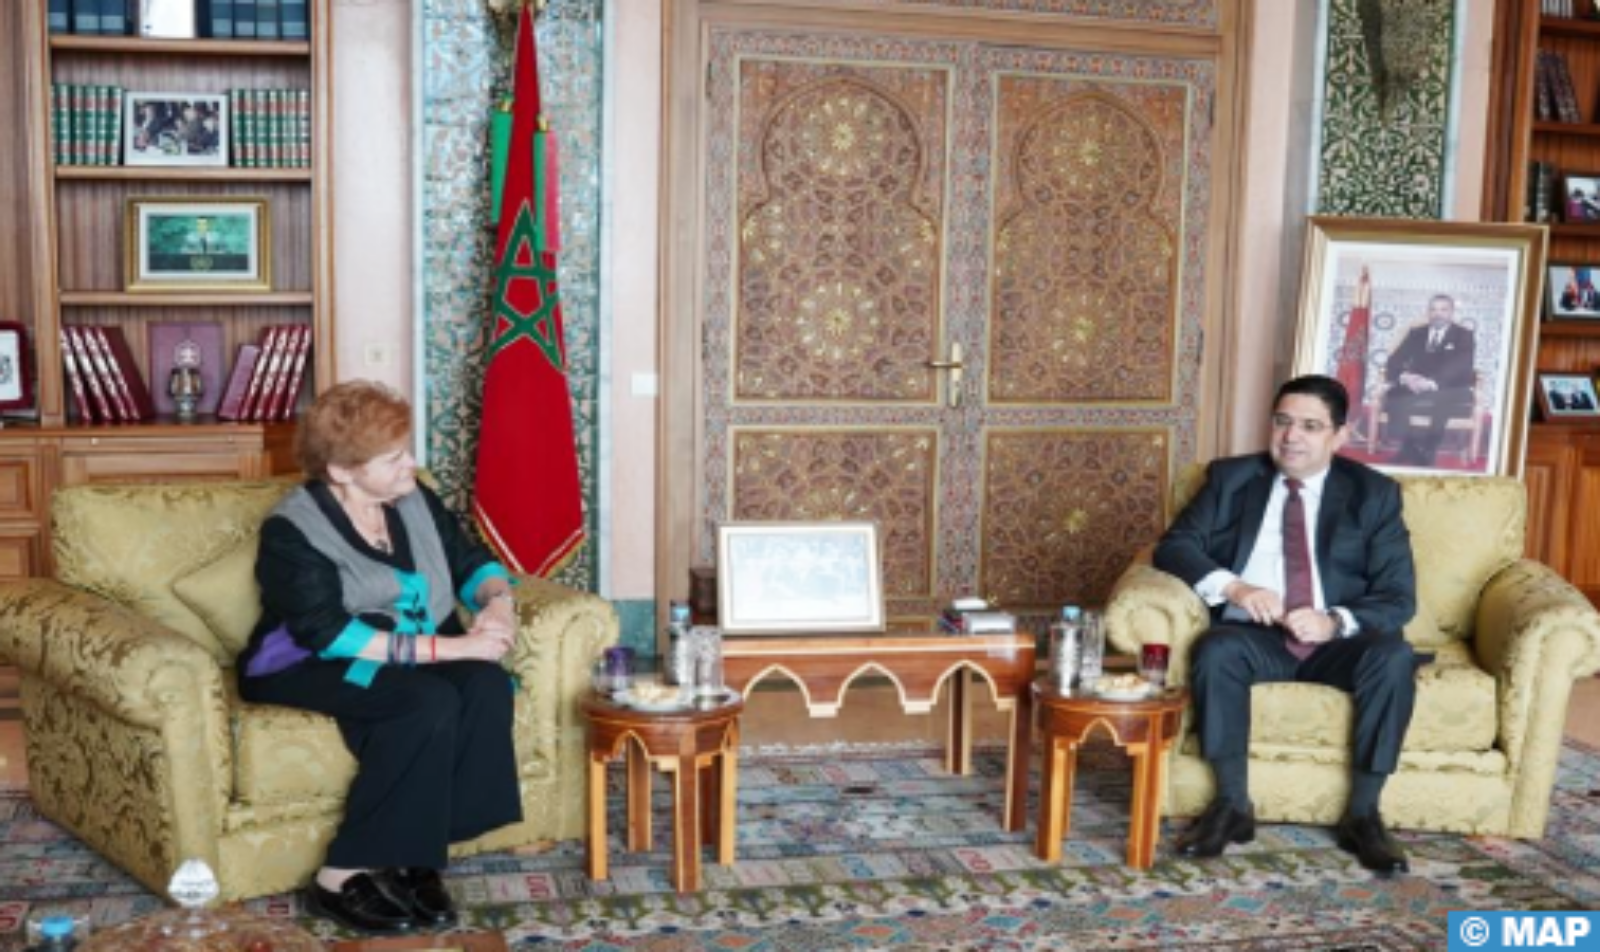 المغرب شريك في مكافحة معاداة السامية (دبلوماسية أمريكية)